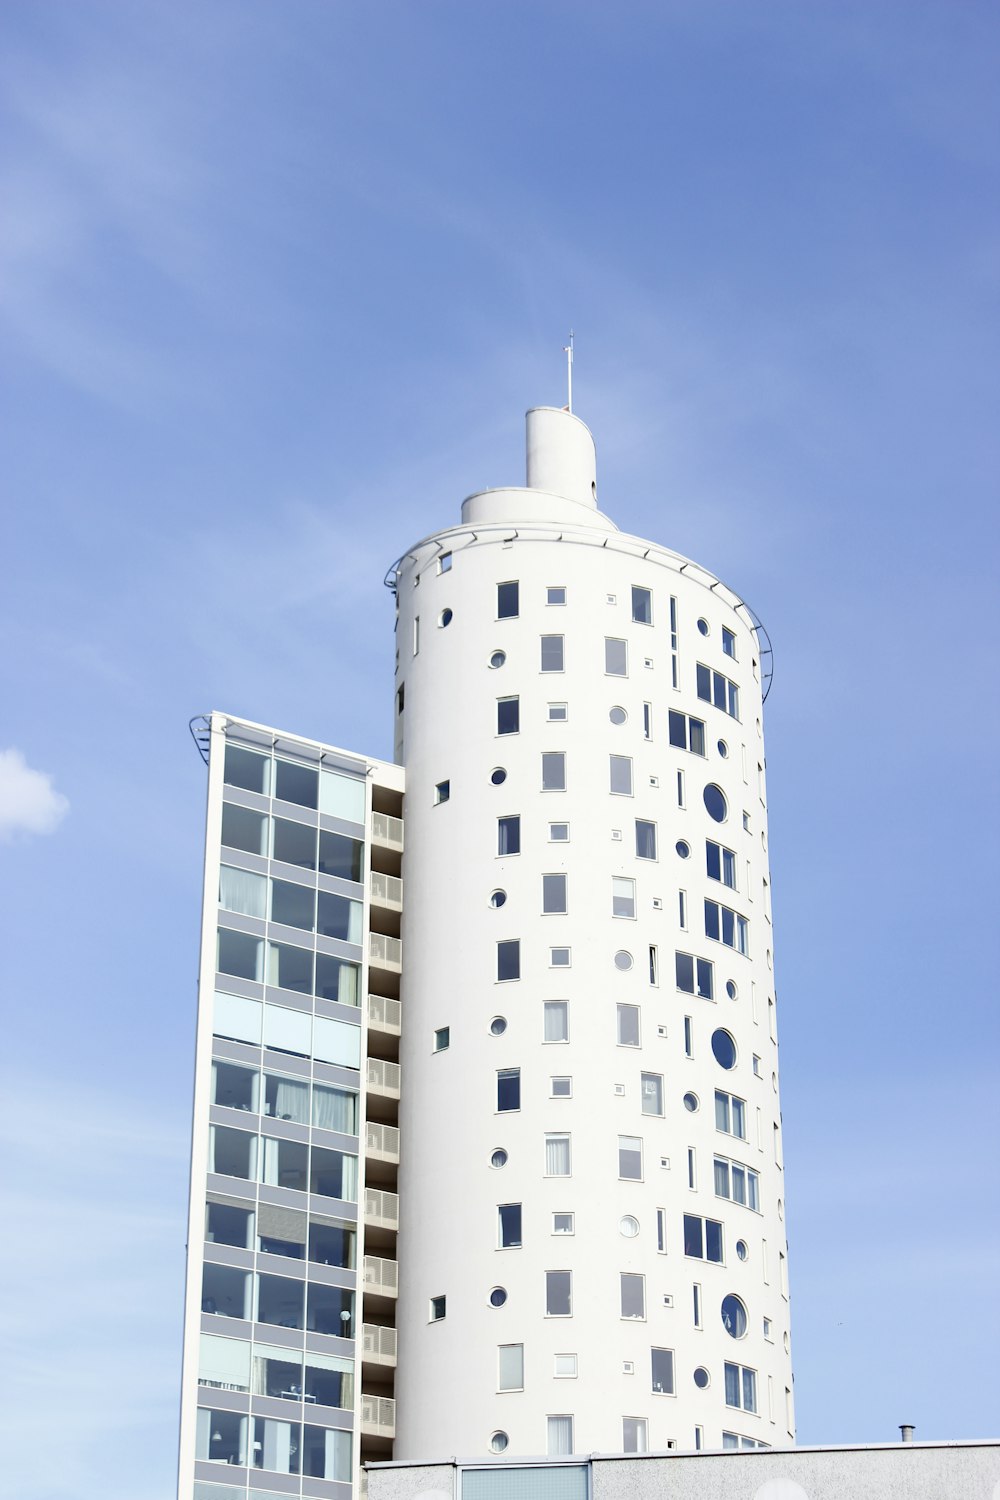 Weißes Turmgebäude unter blauem und weißem Himmel während des Tages